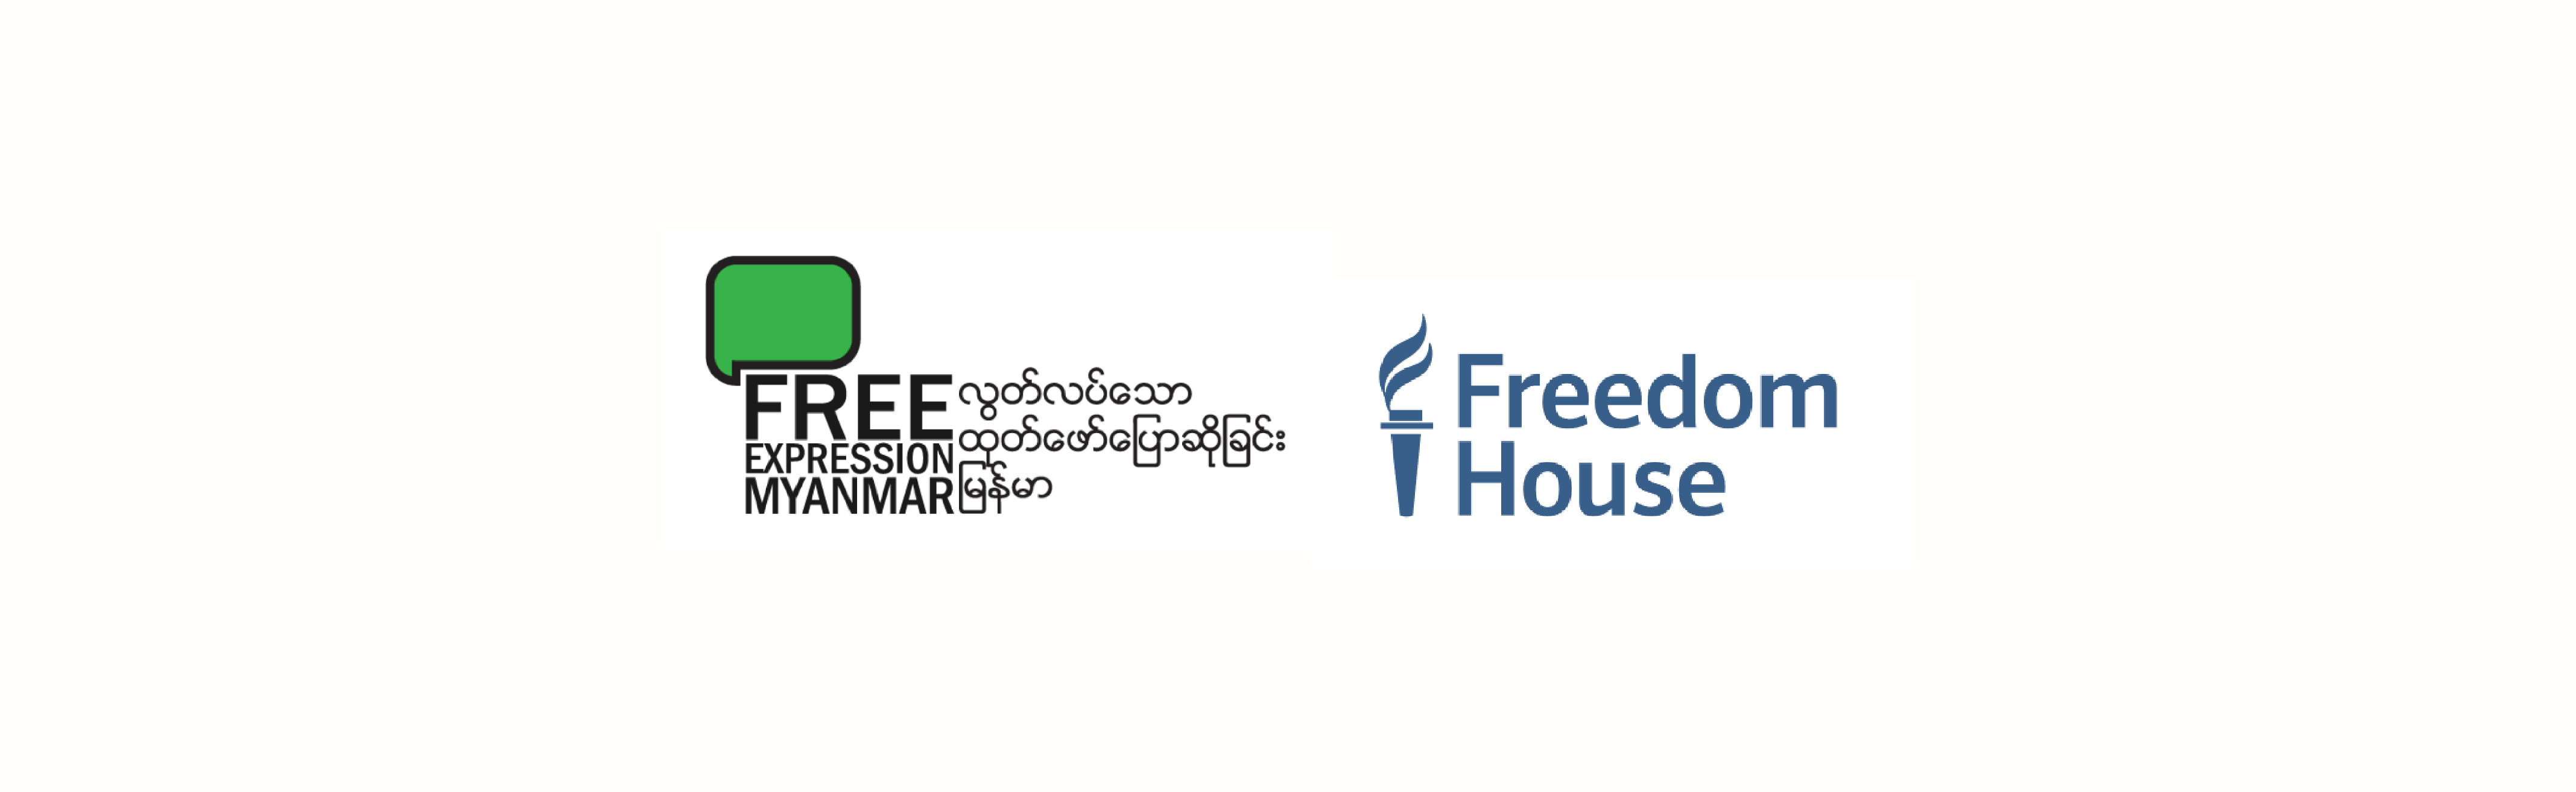 4271px x 1313px - Freedom of the Net 2020 - Progressive Voice Myanmar